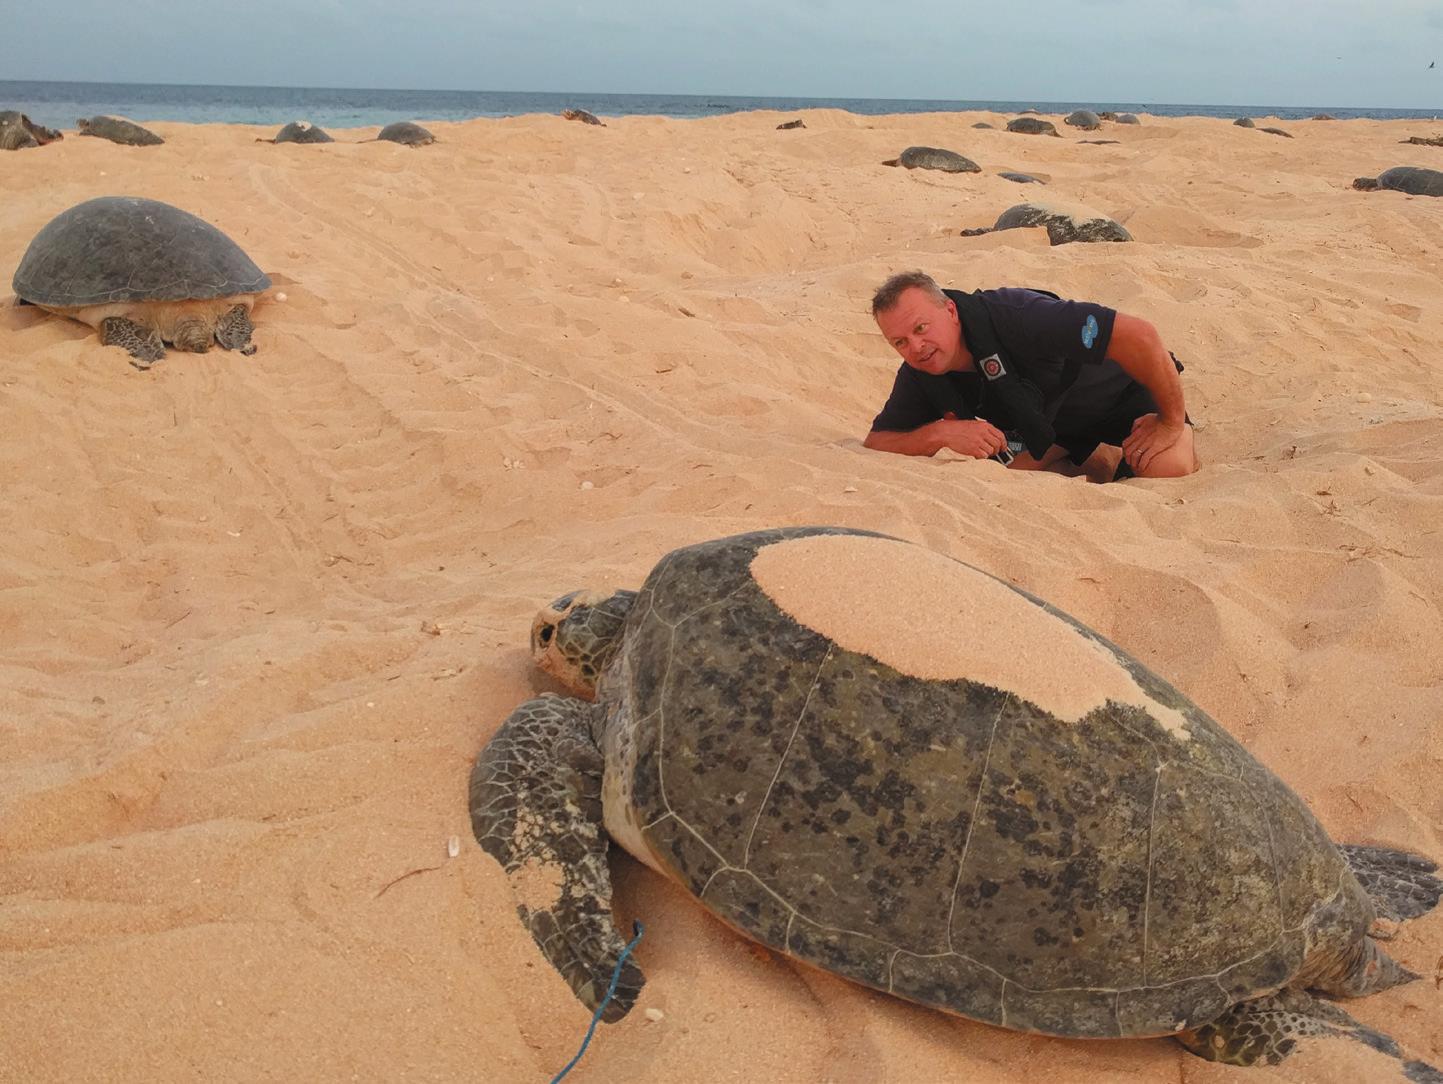 Satellite Internet Helpingprotect Endangered Turtles